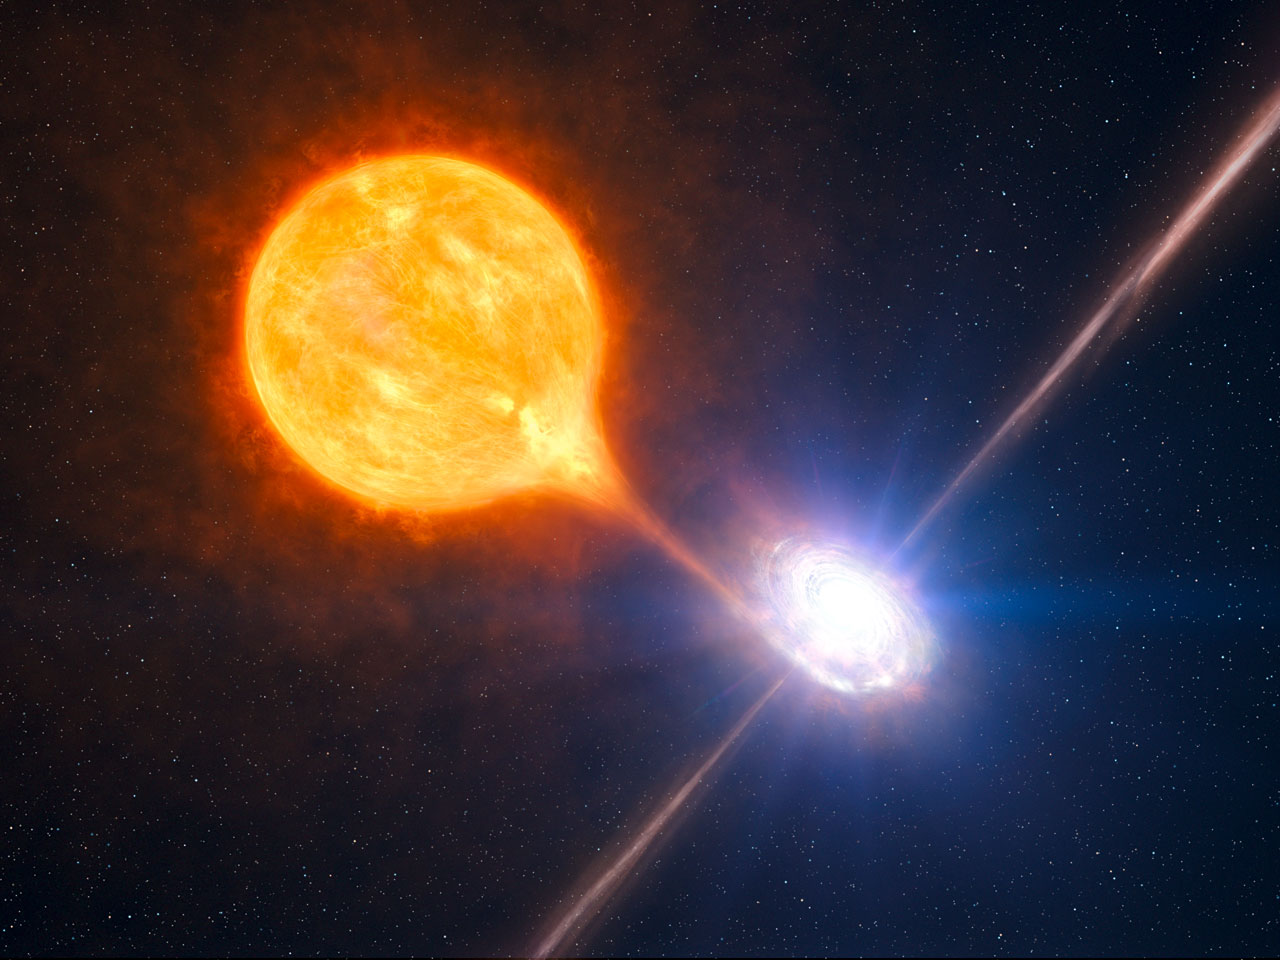 Vue d'artiste du trou noir émettant de puissants jets de particules. La matière arrachée par effet de marée à l'étoile compagnon (en jaune) fournit l'énergie nécessaire à l'accélération des jets en formant un disque d'accrétion et en tombant dans le trou noir. © ESO/L. Calçada